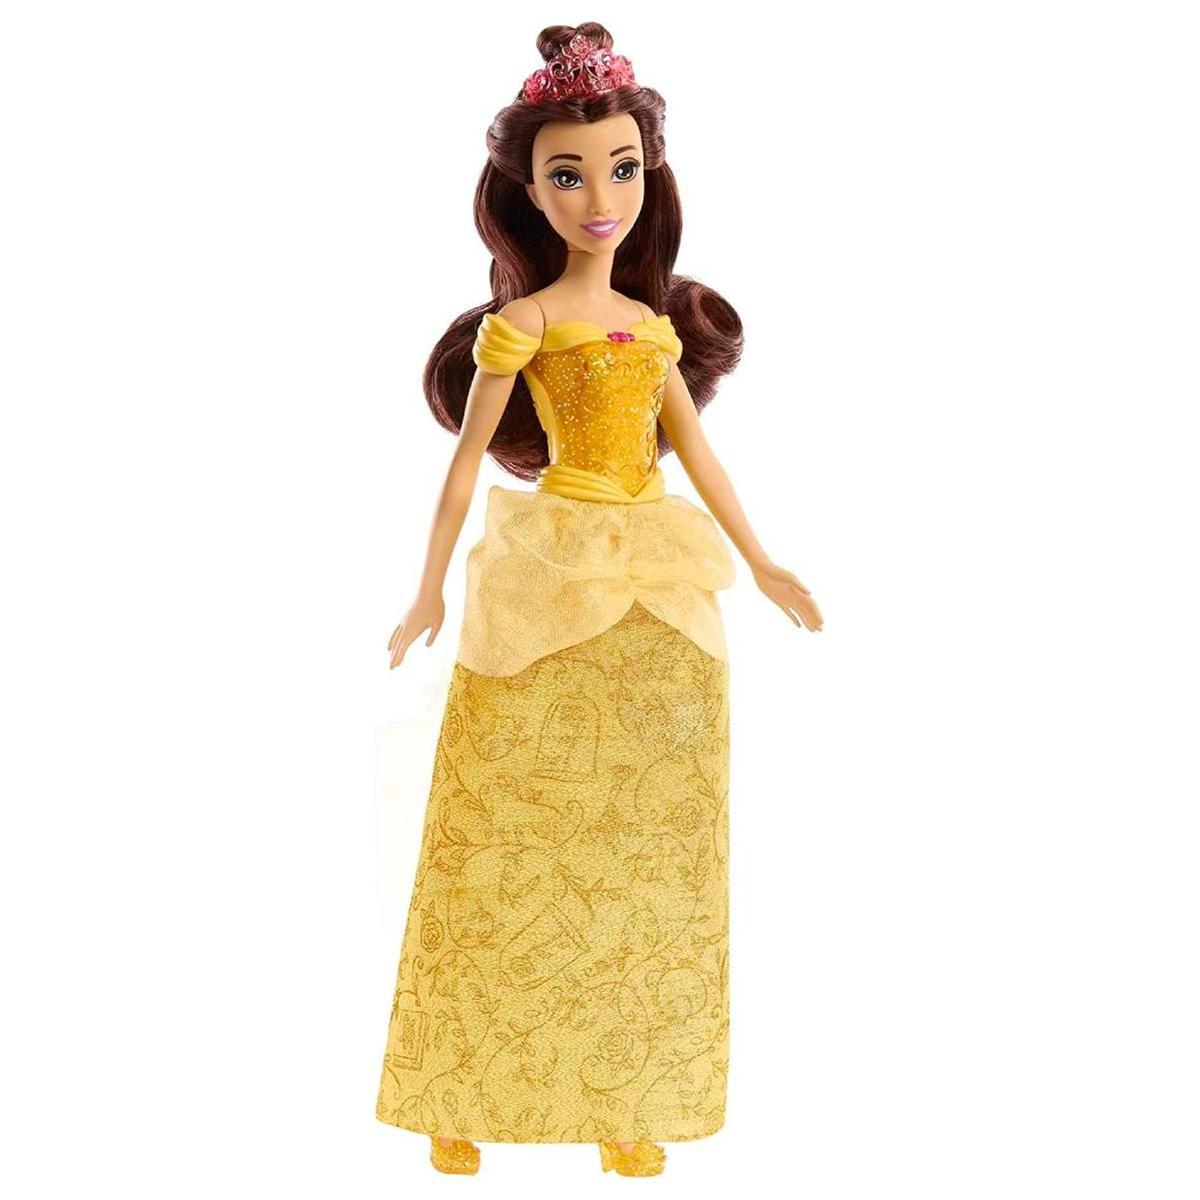 Princesas Disney - Muñeca Bella, Muñecas Princesas Disney & Accesorios